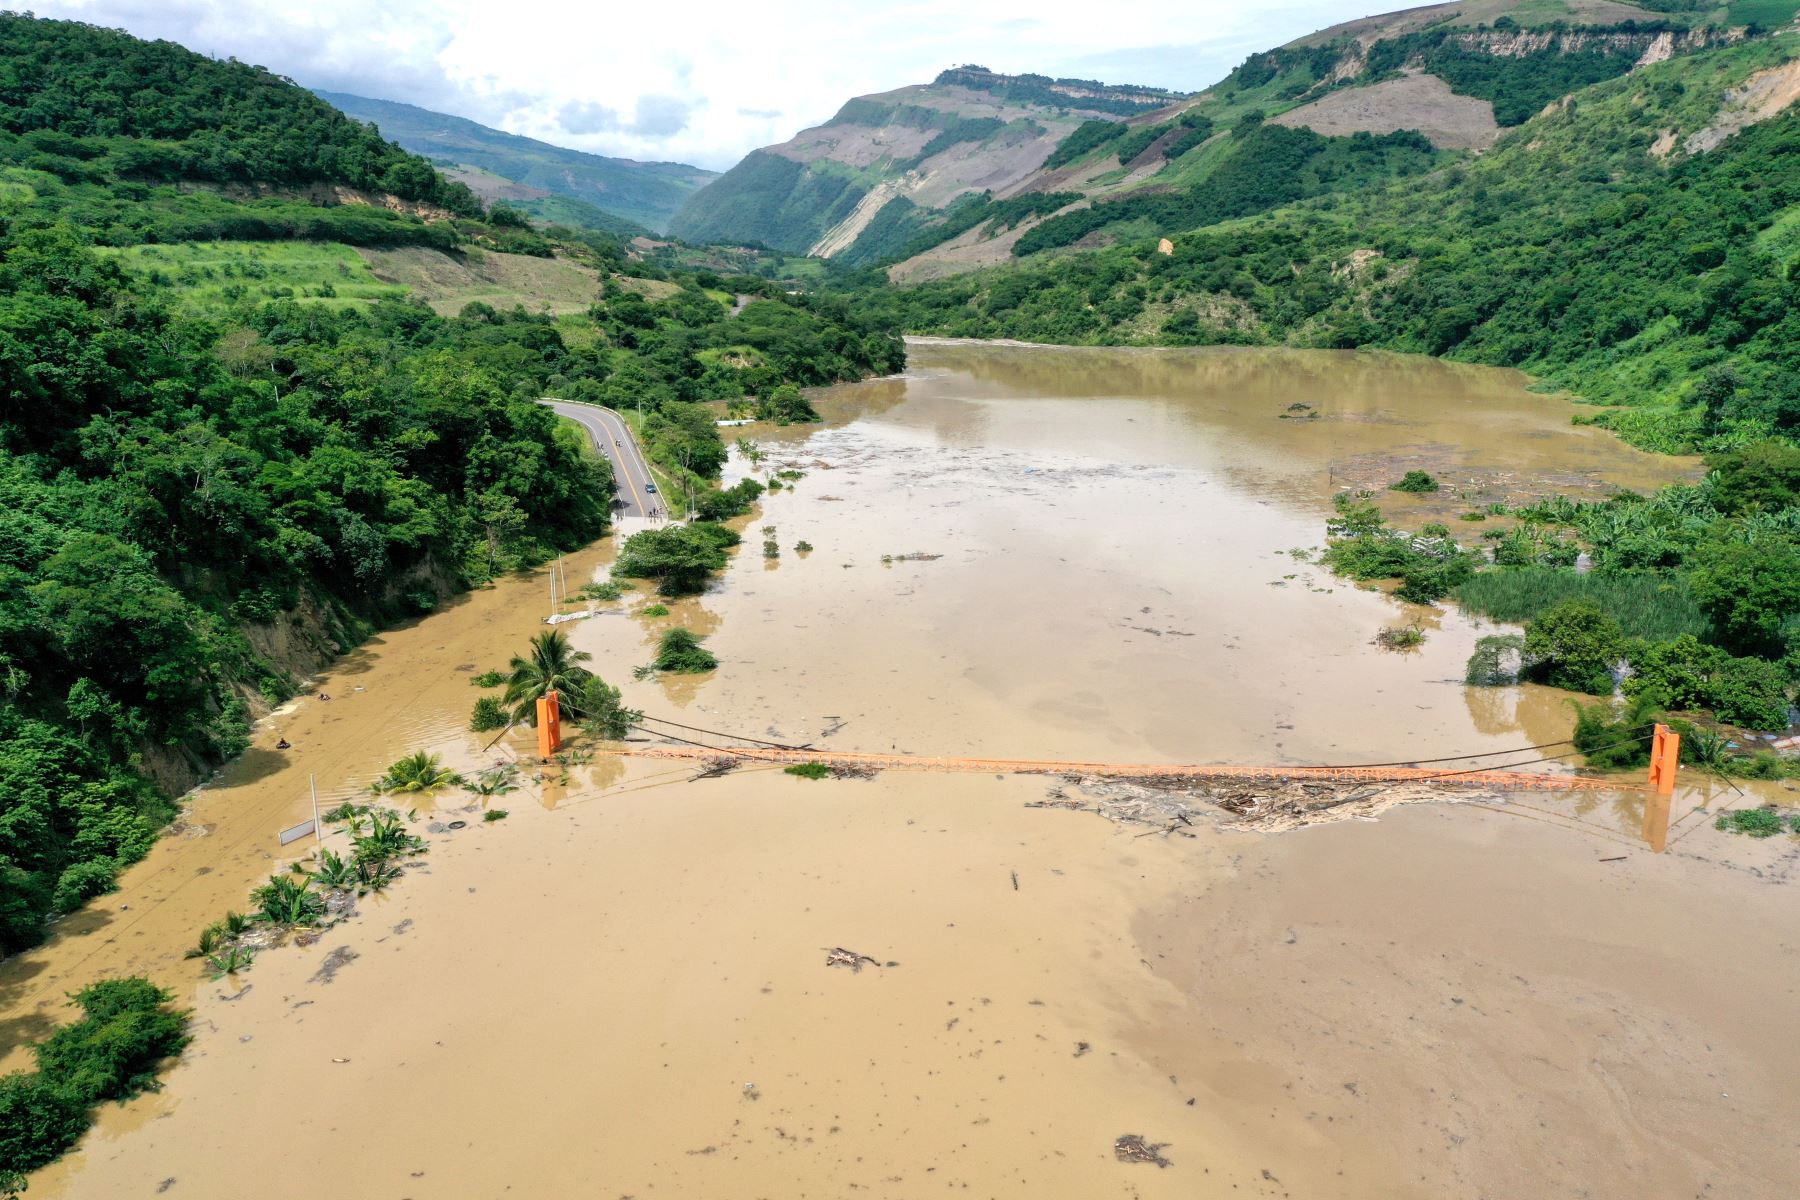 Cierran carretera entre Bagua Grande y Pedro Ruiz por seguridad. Tramo en el sector Aserradero, entre el km 263 y el km 275 de Amazonas, sufrió derrumbes que han provocado que el agua del río Utcubamba se embalse e inunde la pista.
Foto: MTC